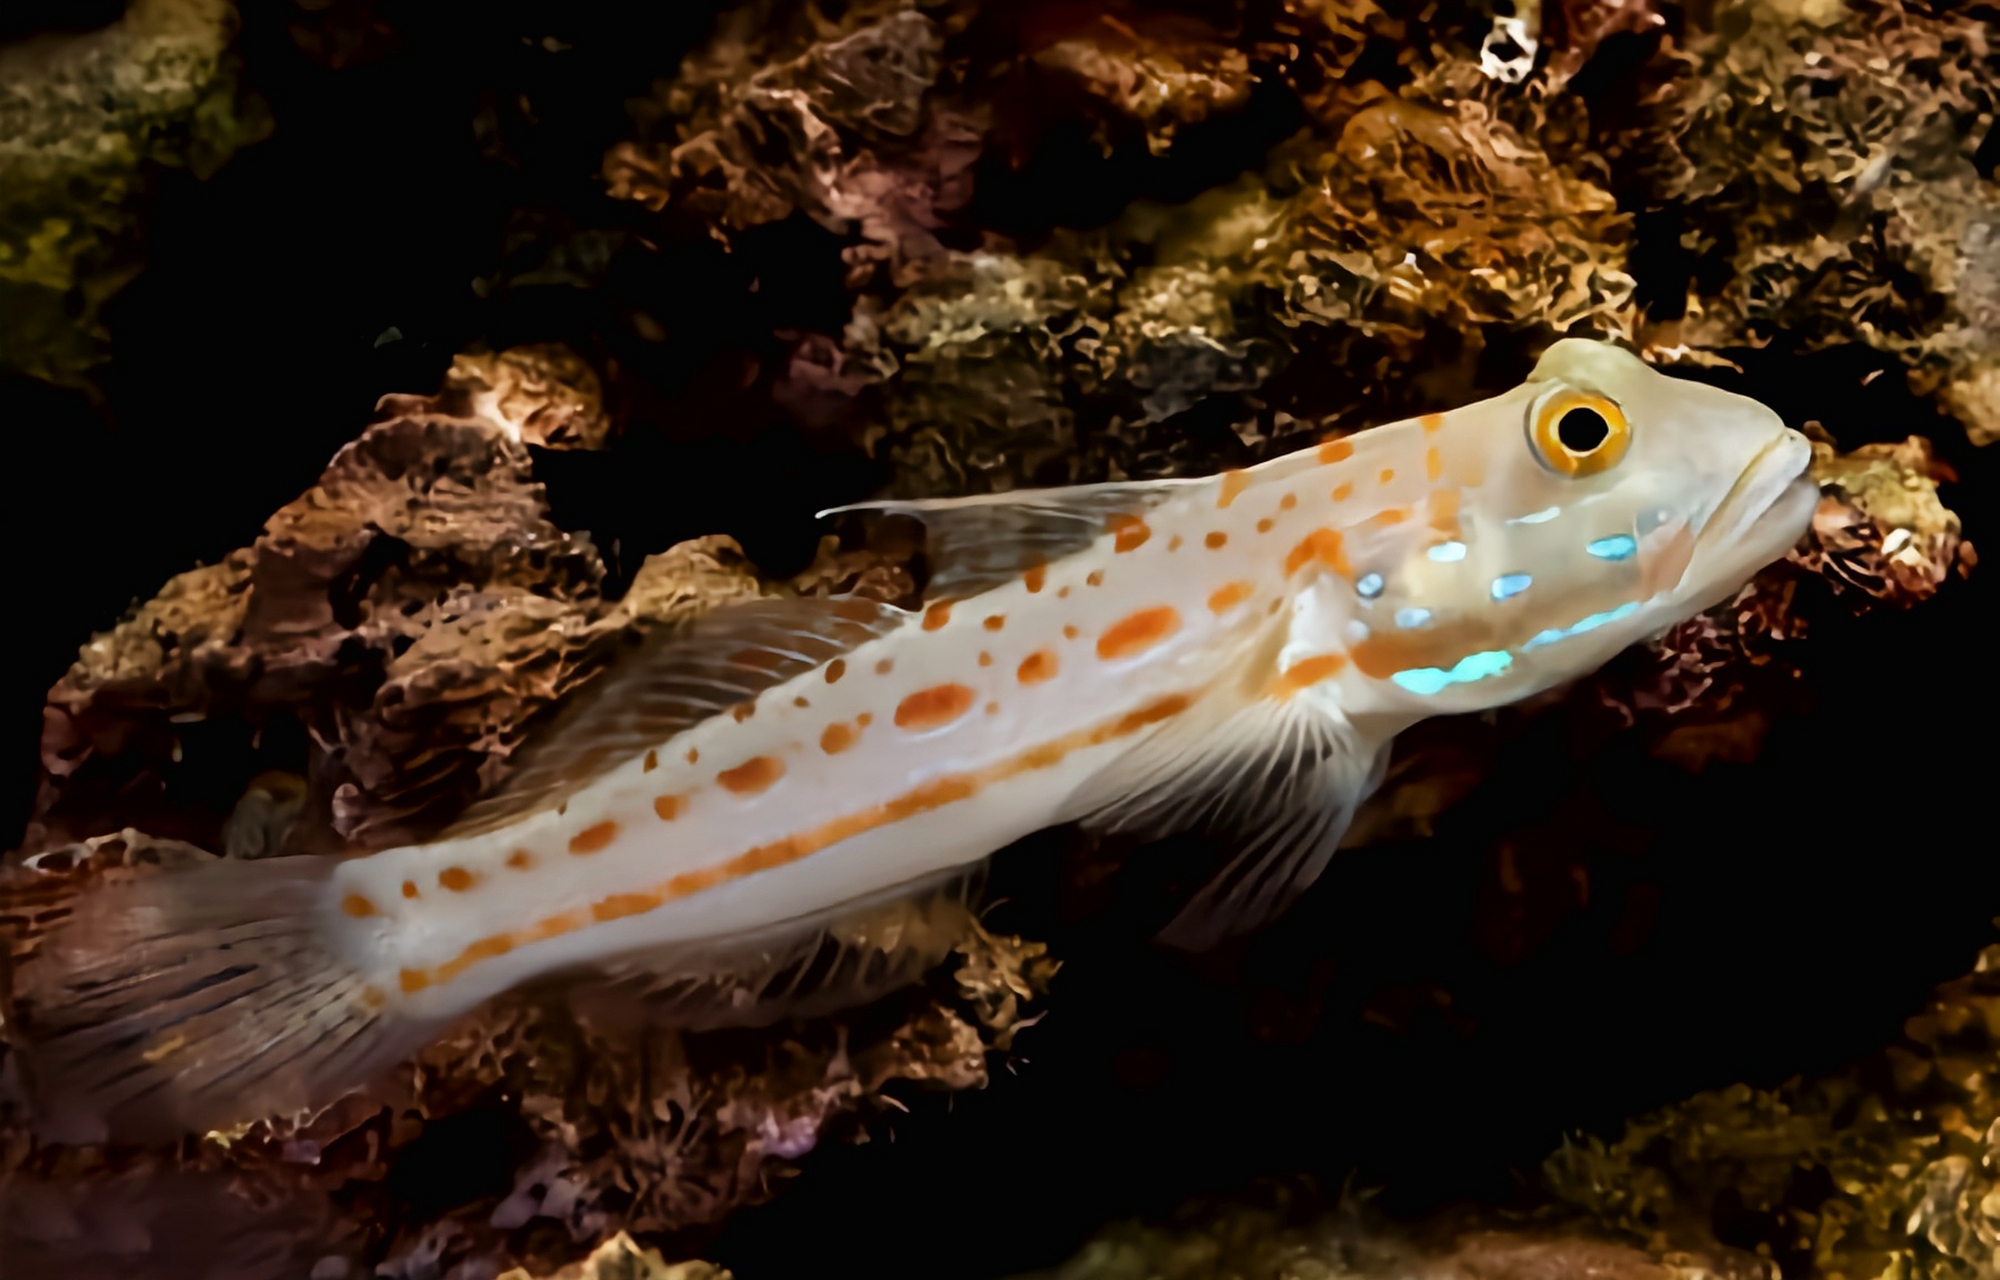 它是一种小型浅水鱼类,体长11厘米,体色灰褐色带有鲜艳的橘色斑点